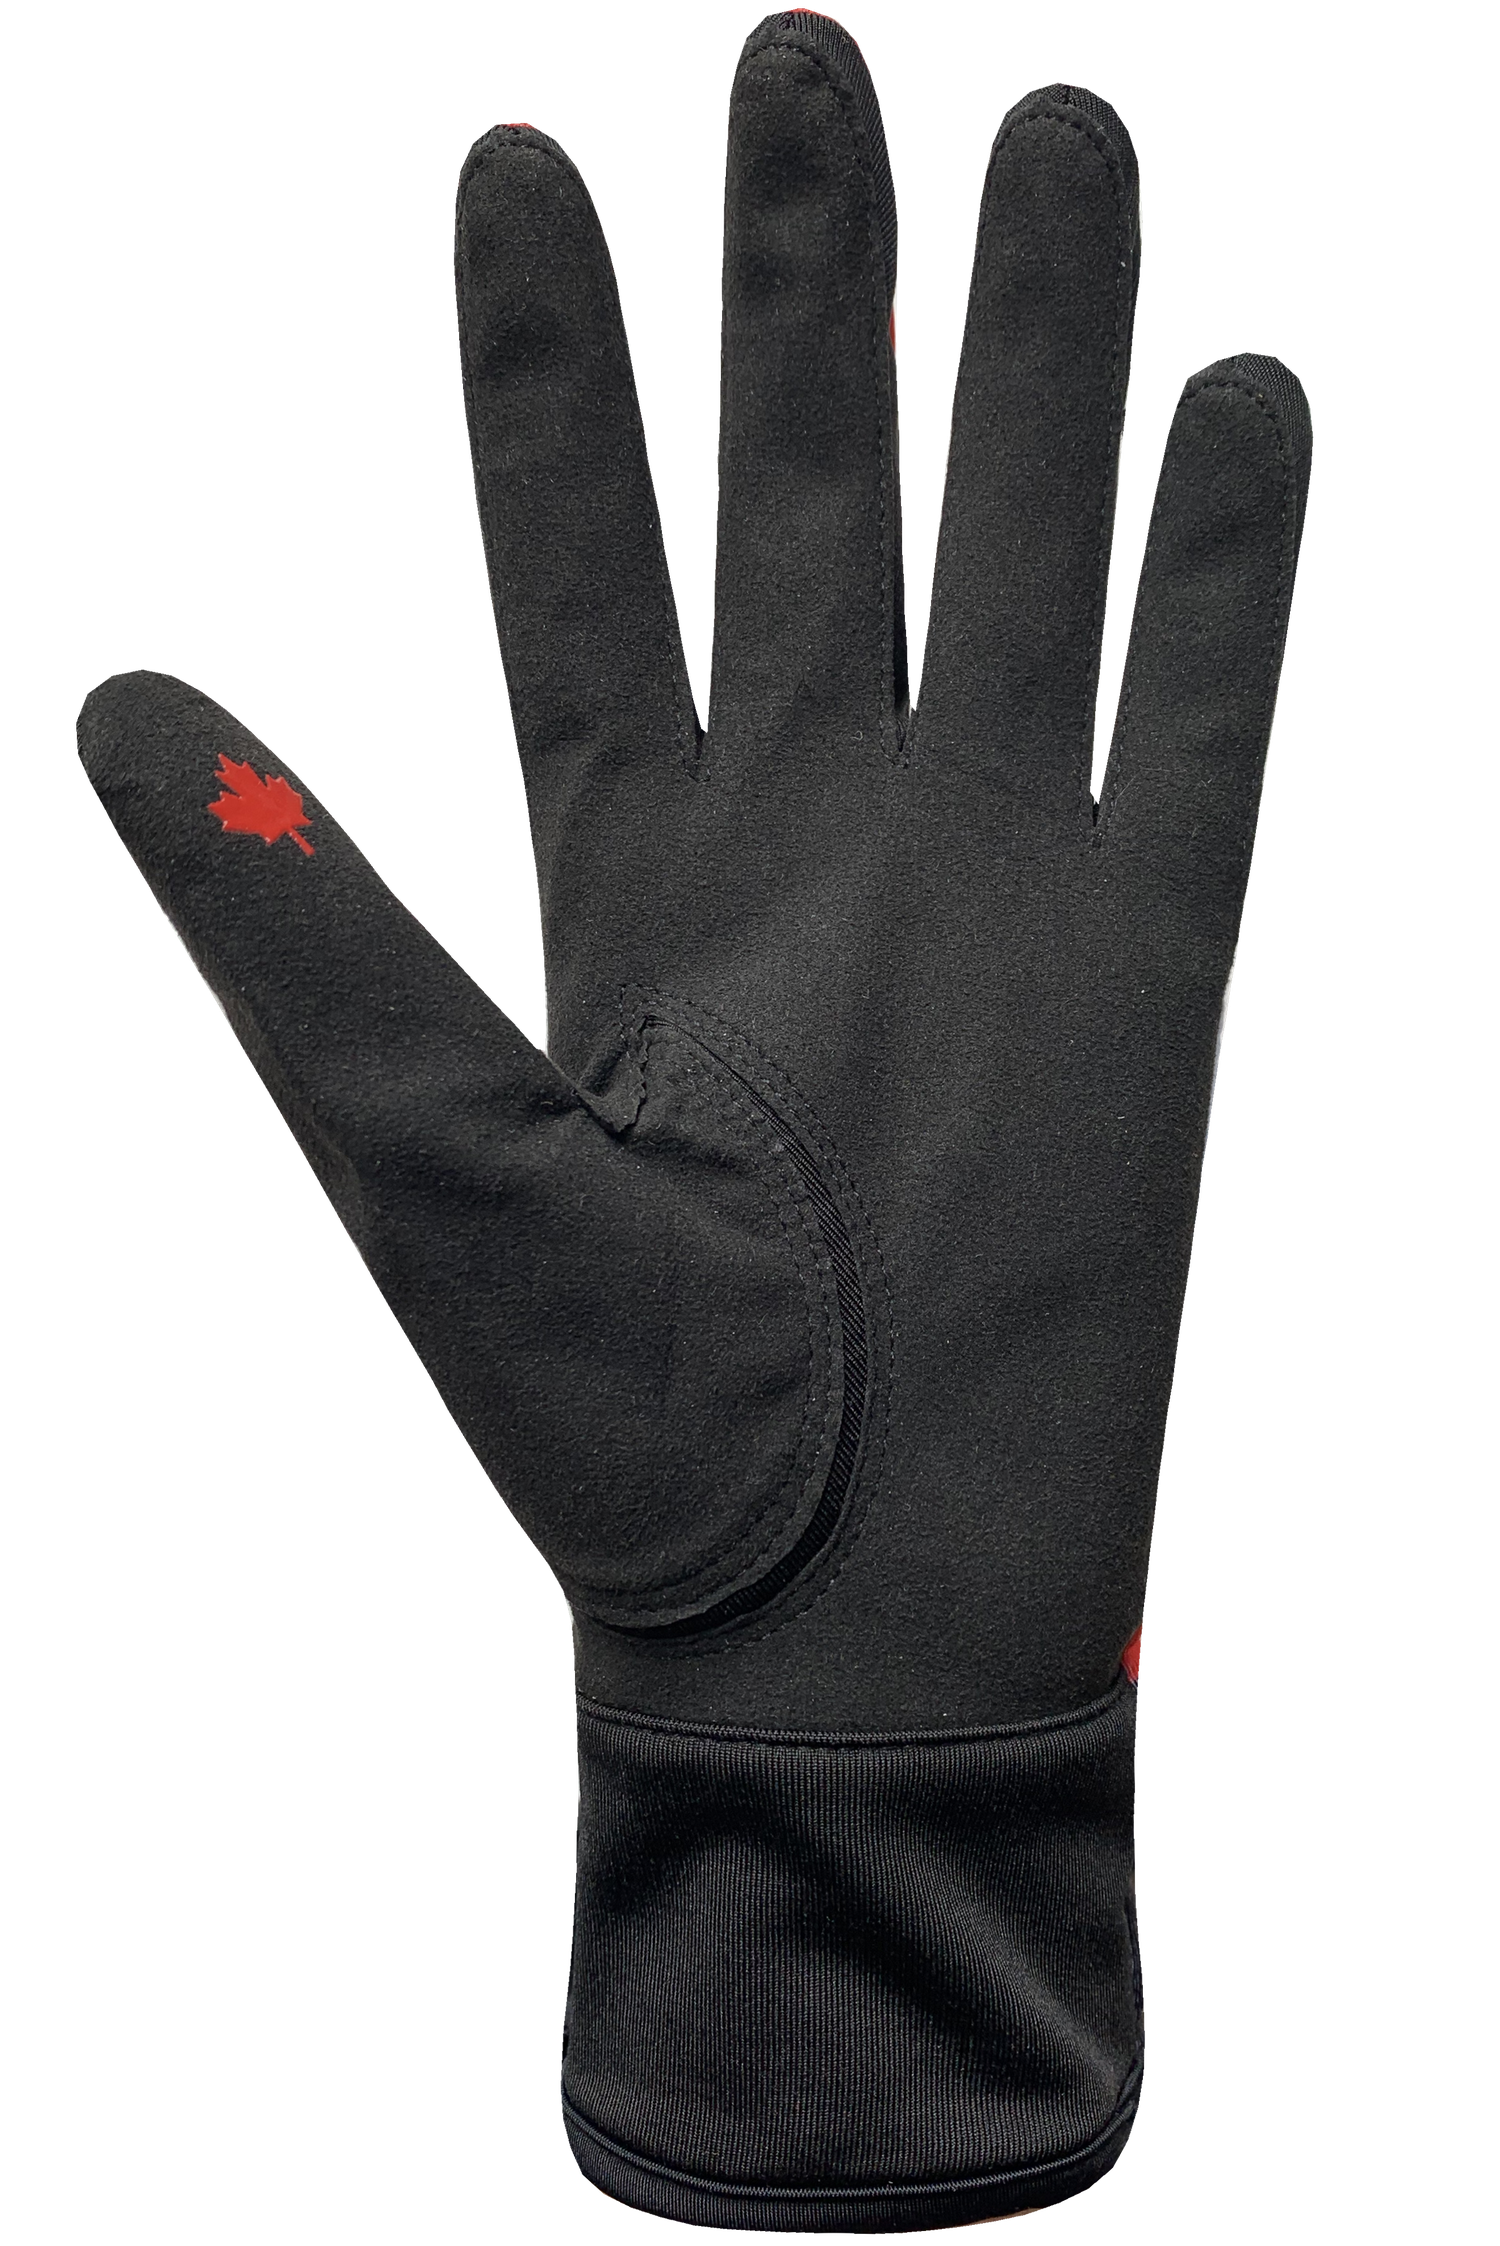 Maple Leaf Race Gloves - Men, Black/Red/White